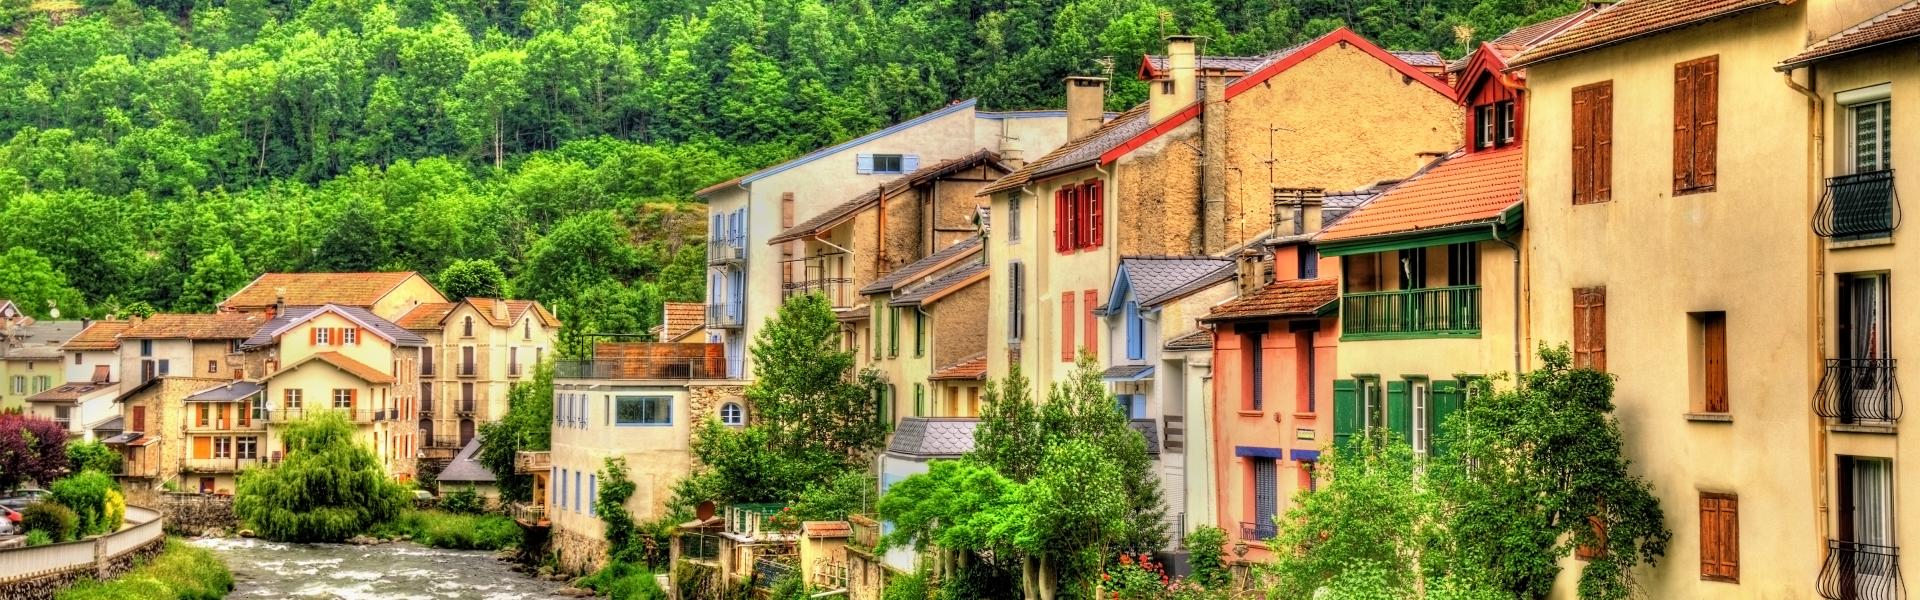 Locations de vacances et chambres d'hôtes à Foix - HomeToGo